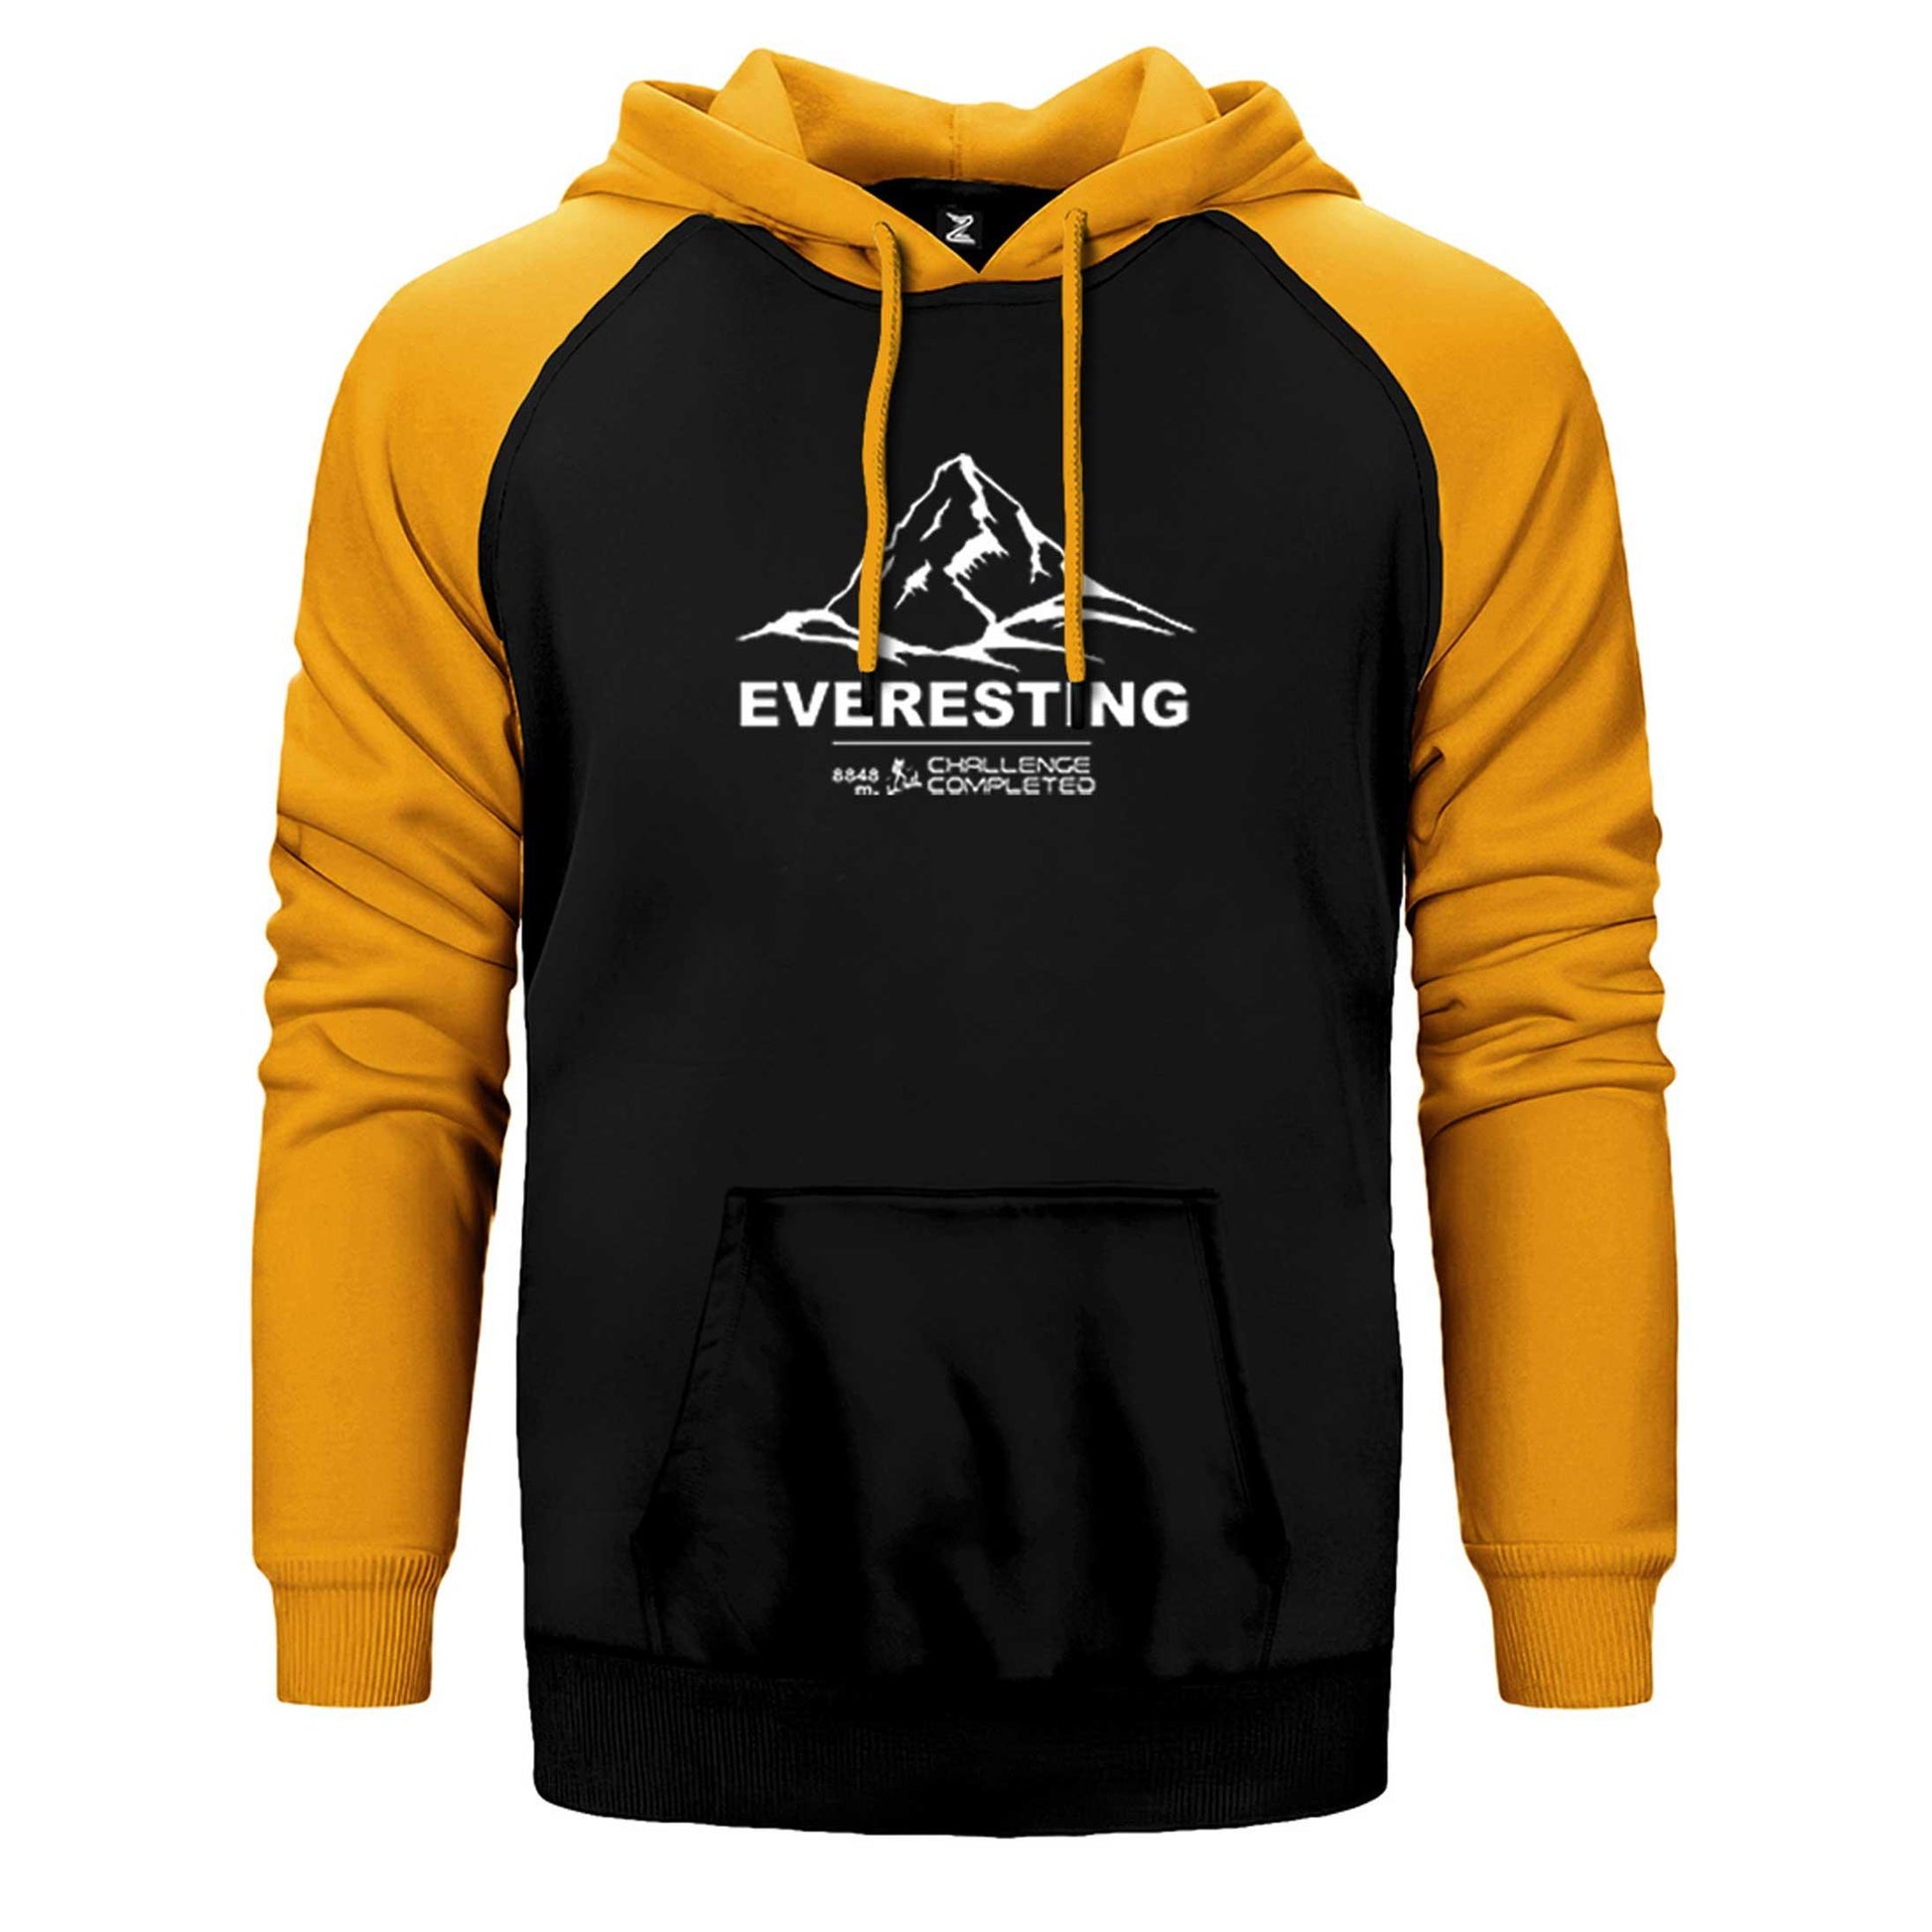 Everesting Çift Renk Reglan Kol Sweatshirt / Hoodie - Zepplingiyim